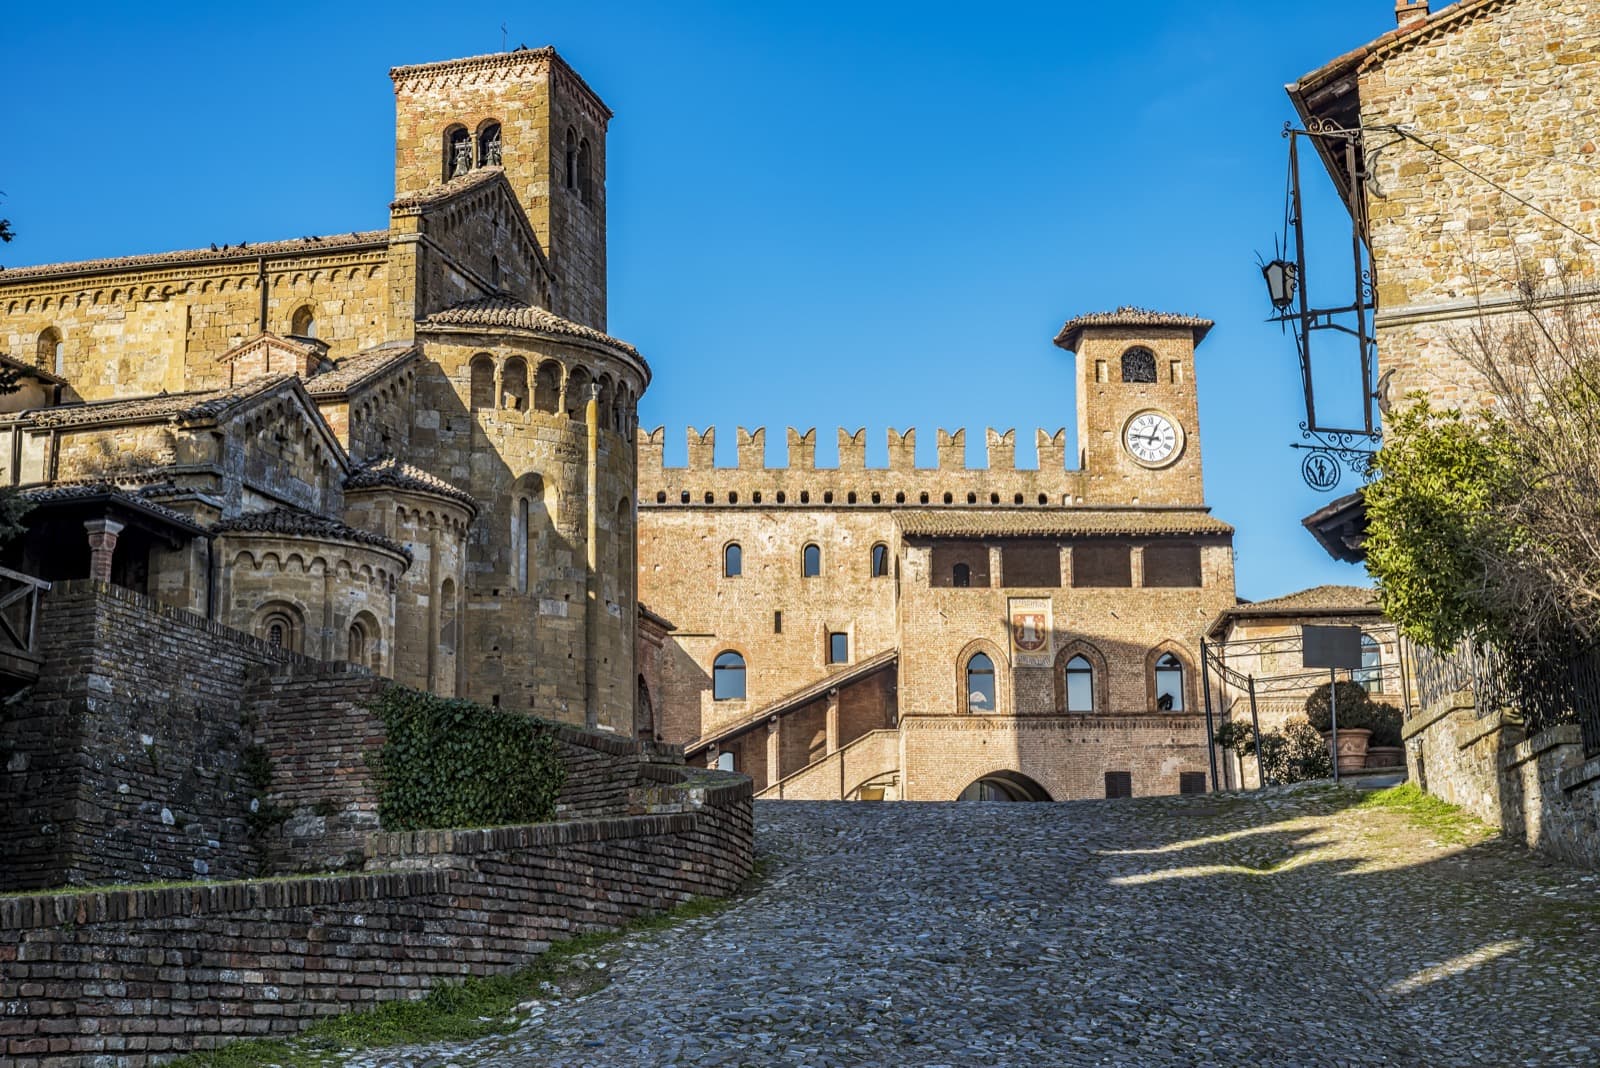 Castell'Arquato (PC) | Credit: Colombo Nicola, via Shutterstock